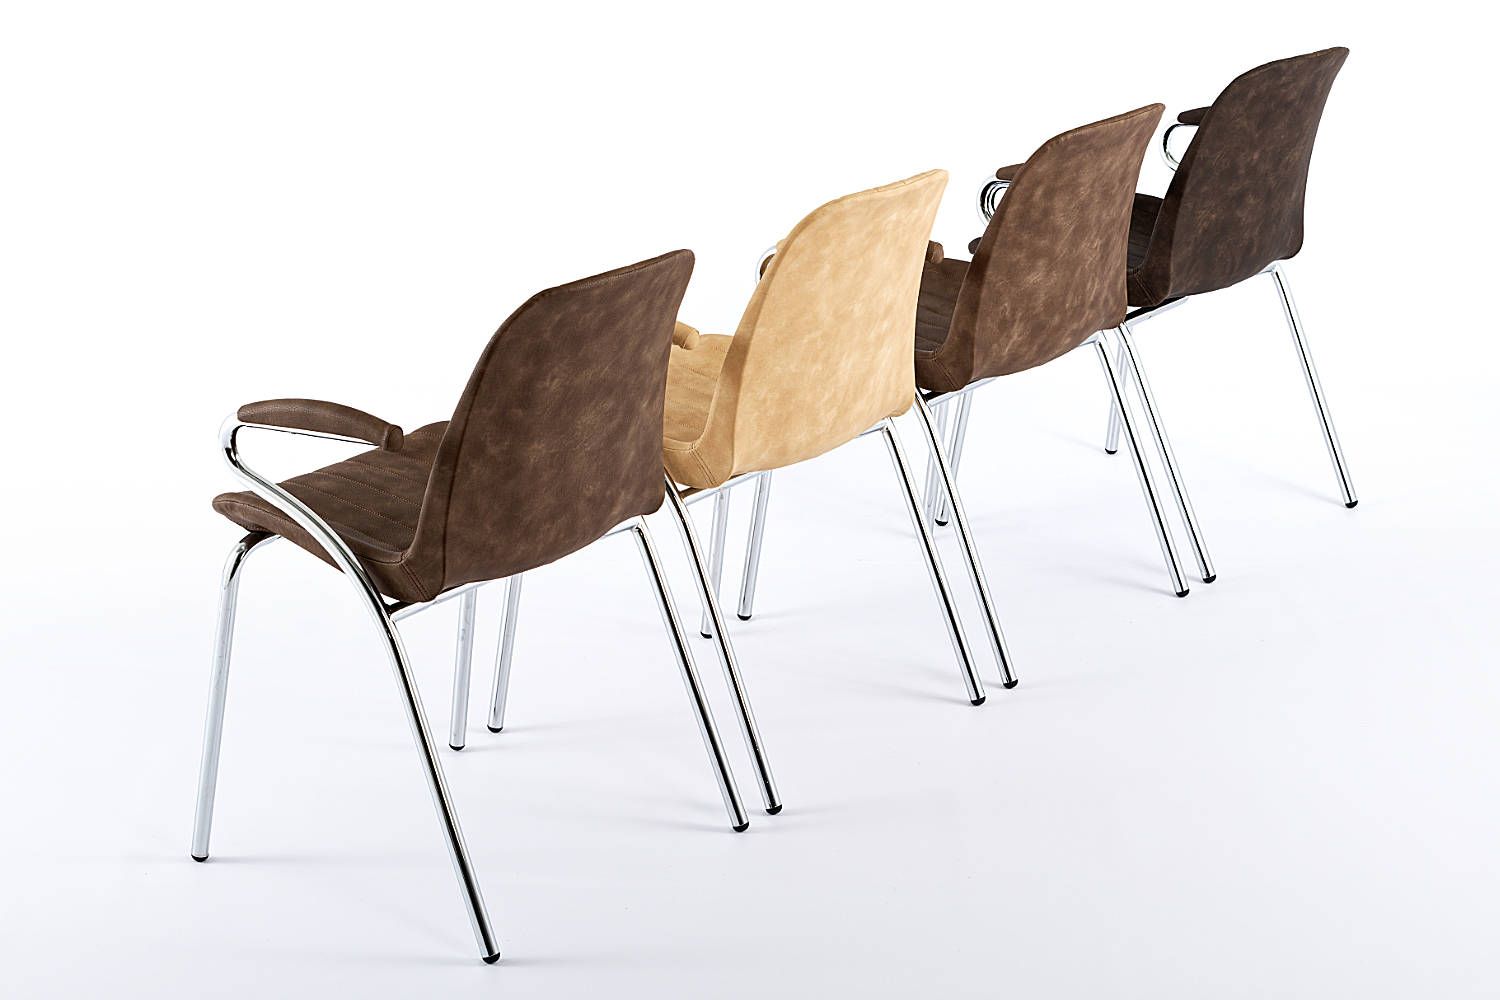 Bei Großveranstaltungen ermöglichen diese Stühle ein stimmiges Gesamtbild und lassen Ihre Gäste bestmöglich sitzen